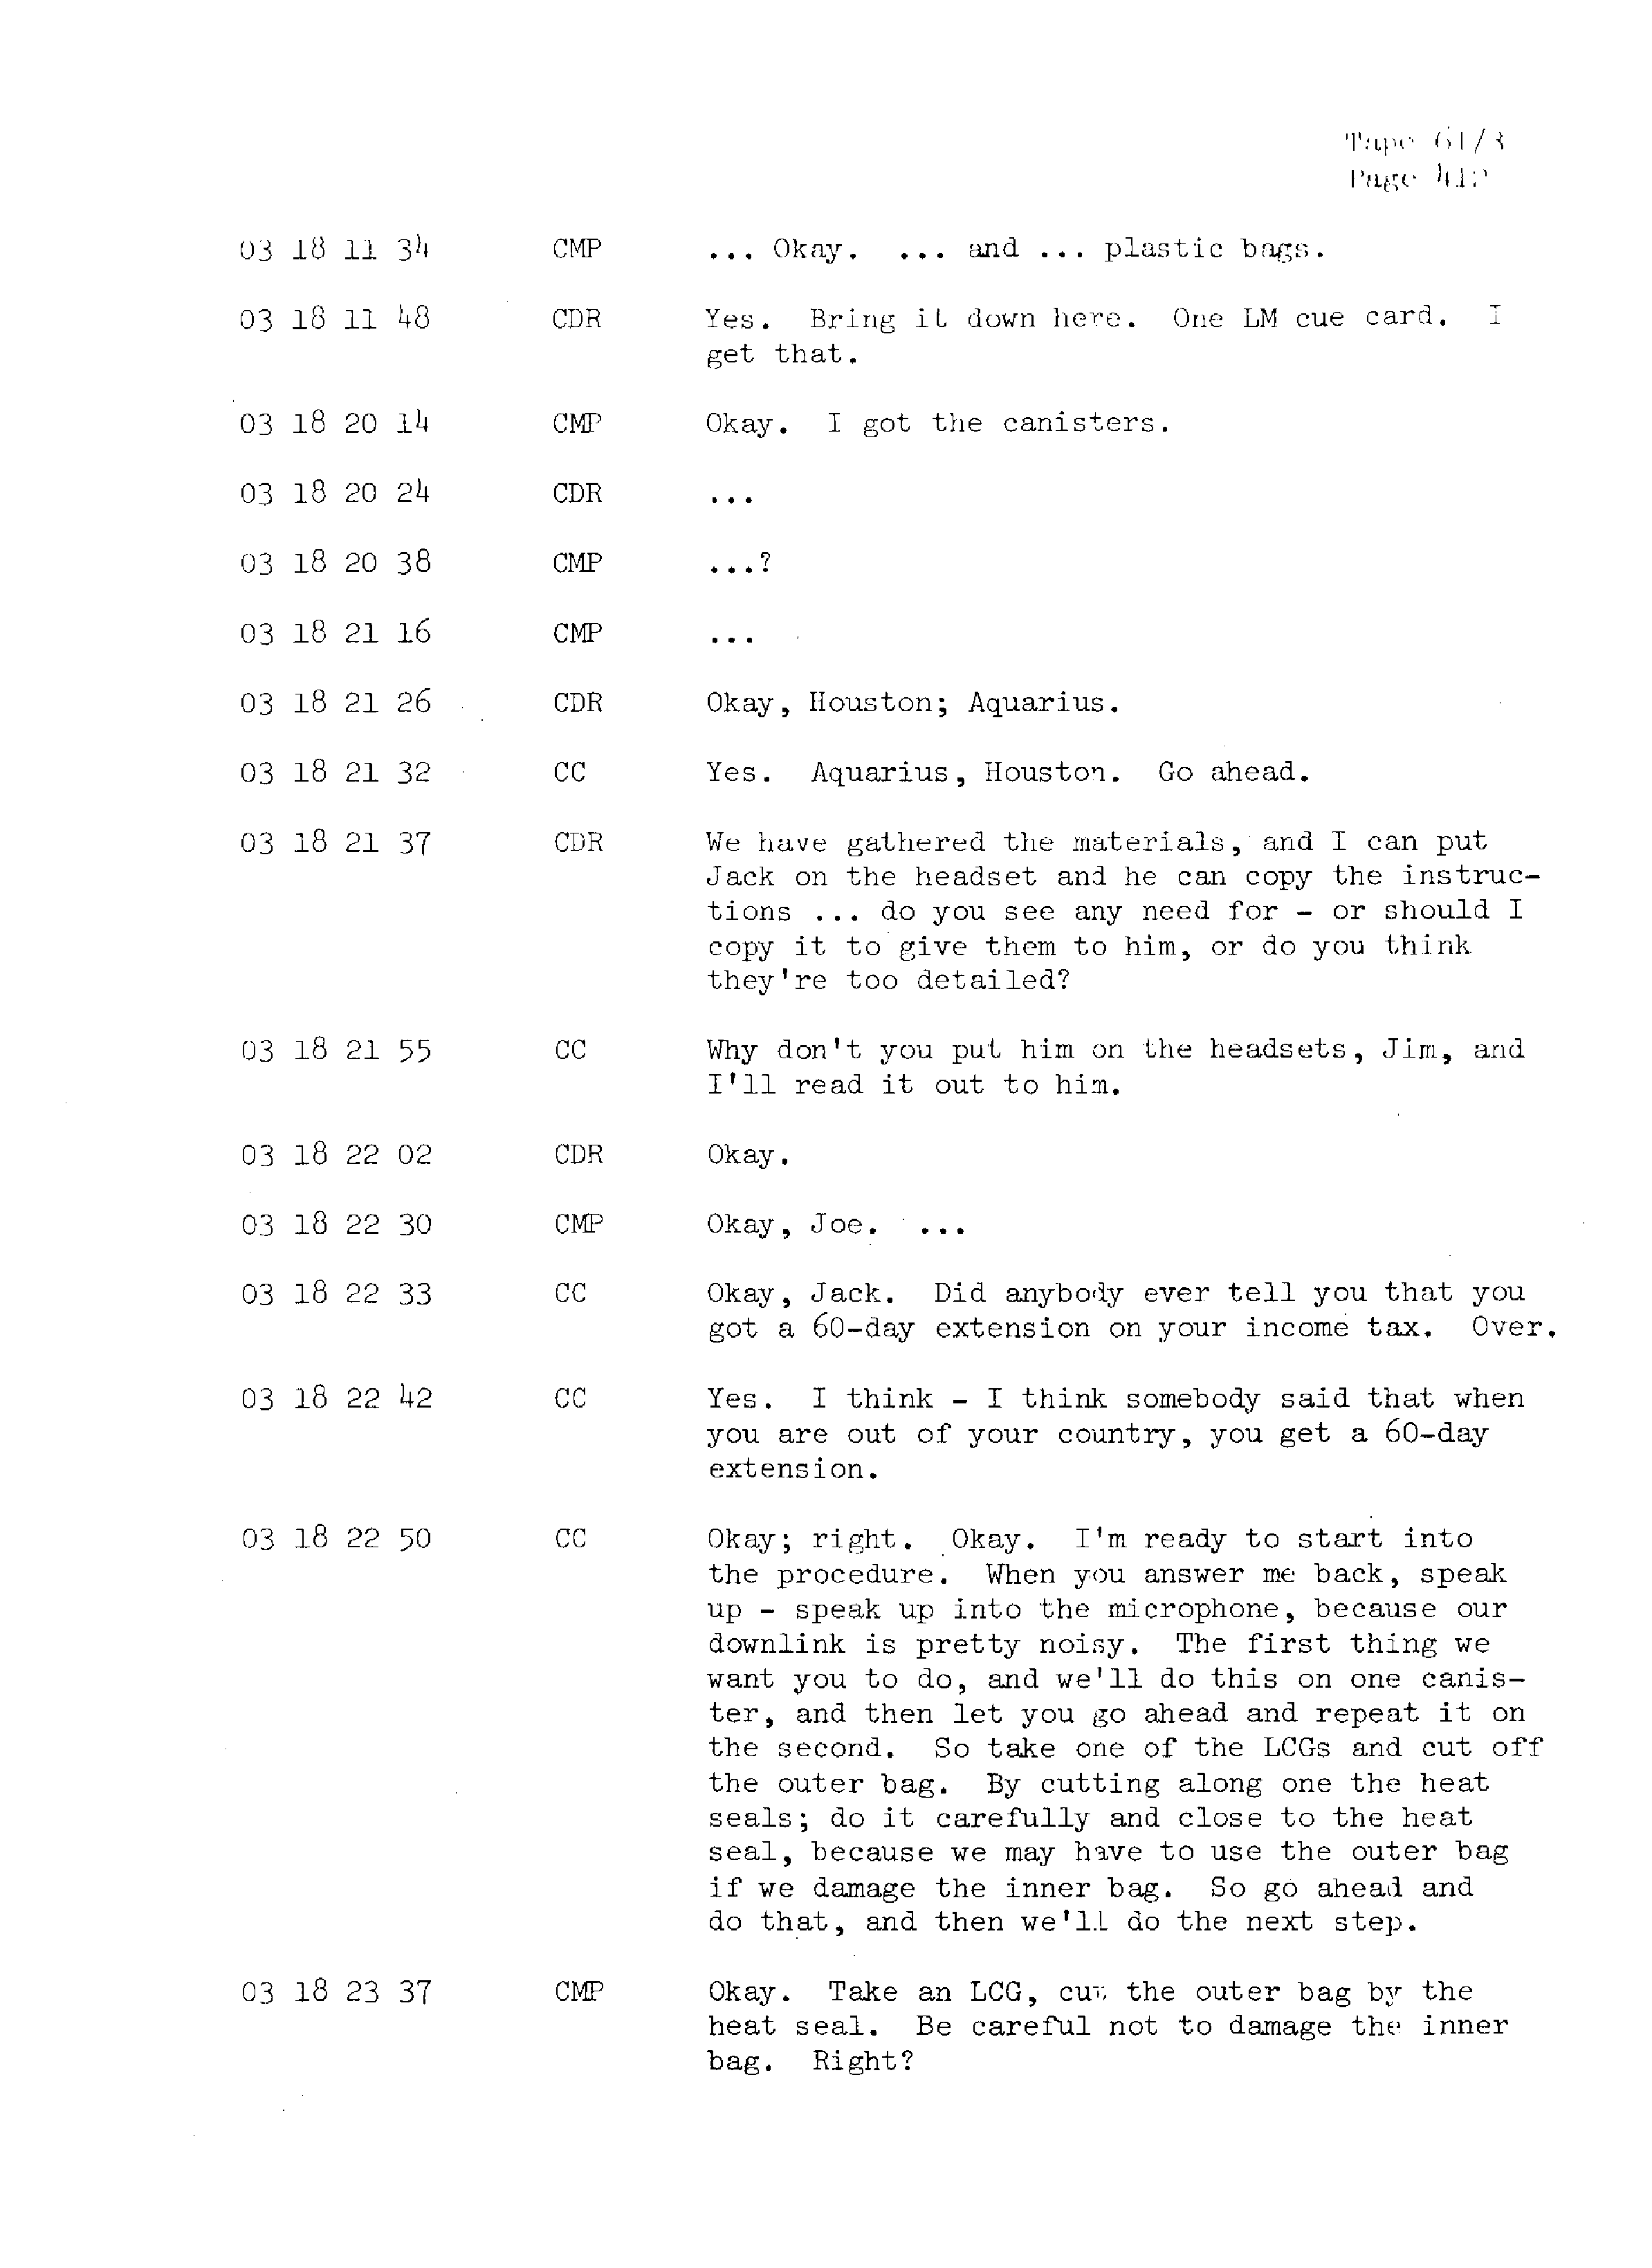 Page 419 of Apollo 13’s original transcript